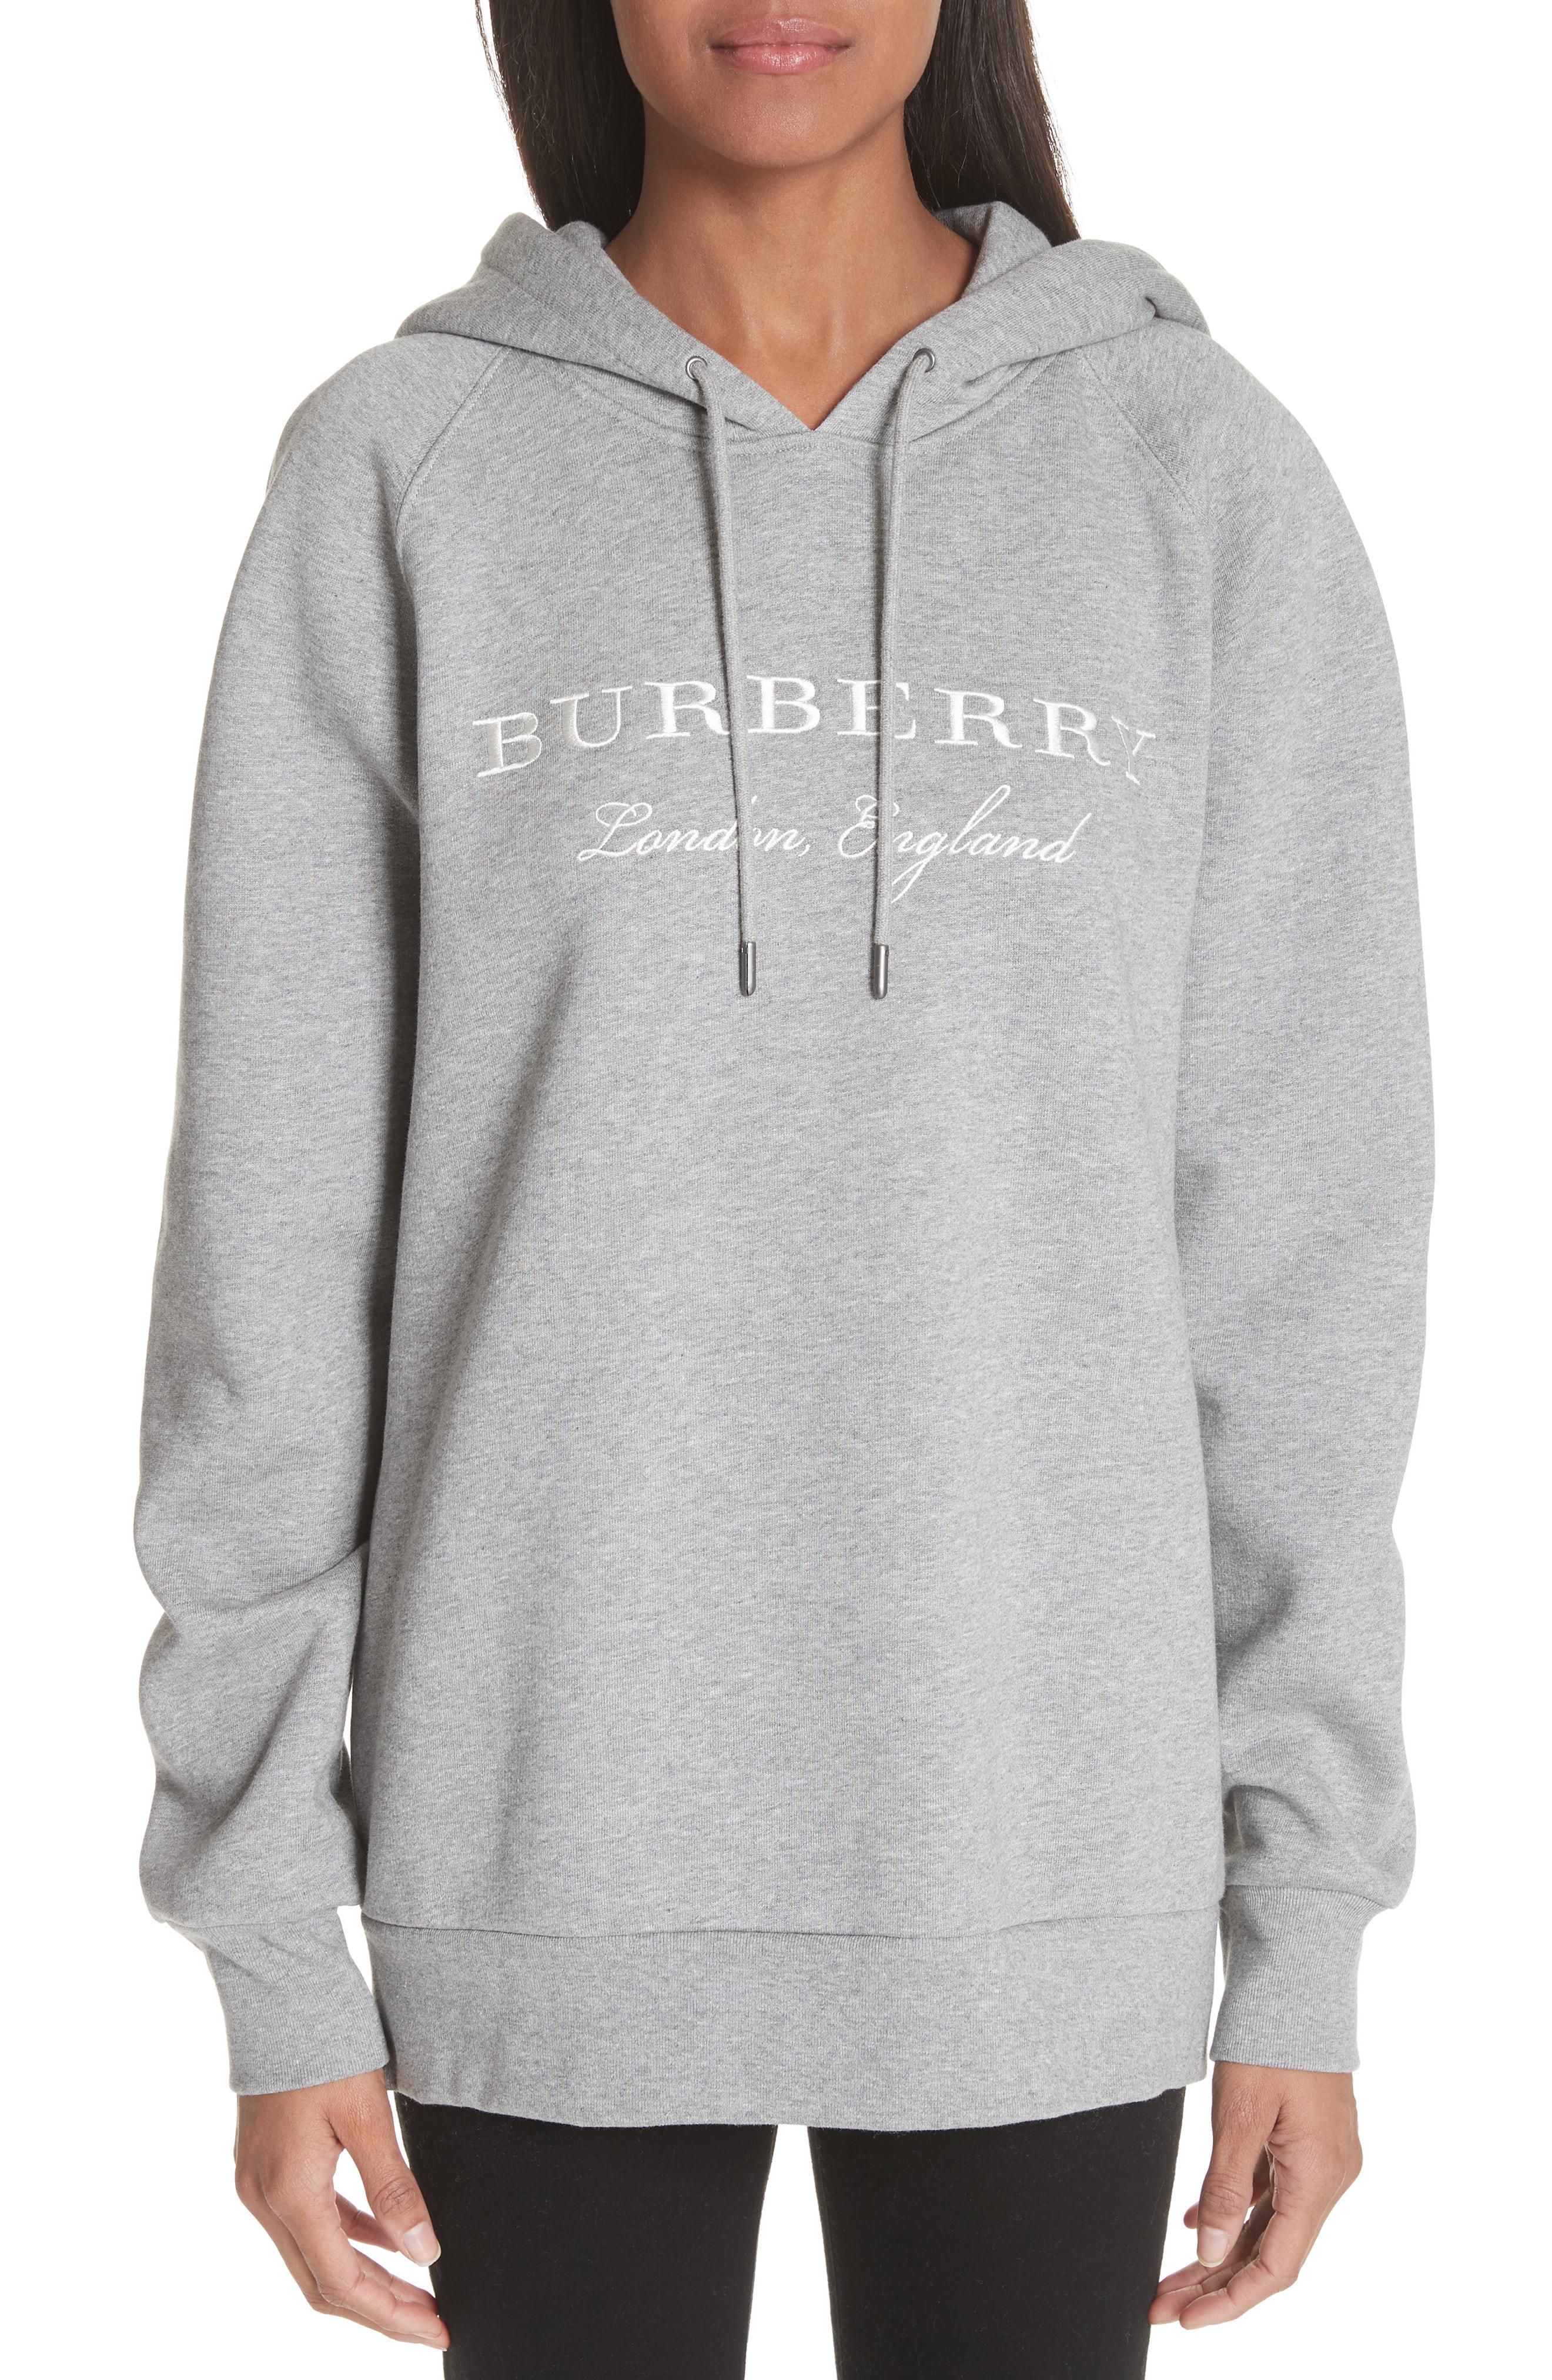 burberry krayford hoodie